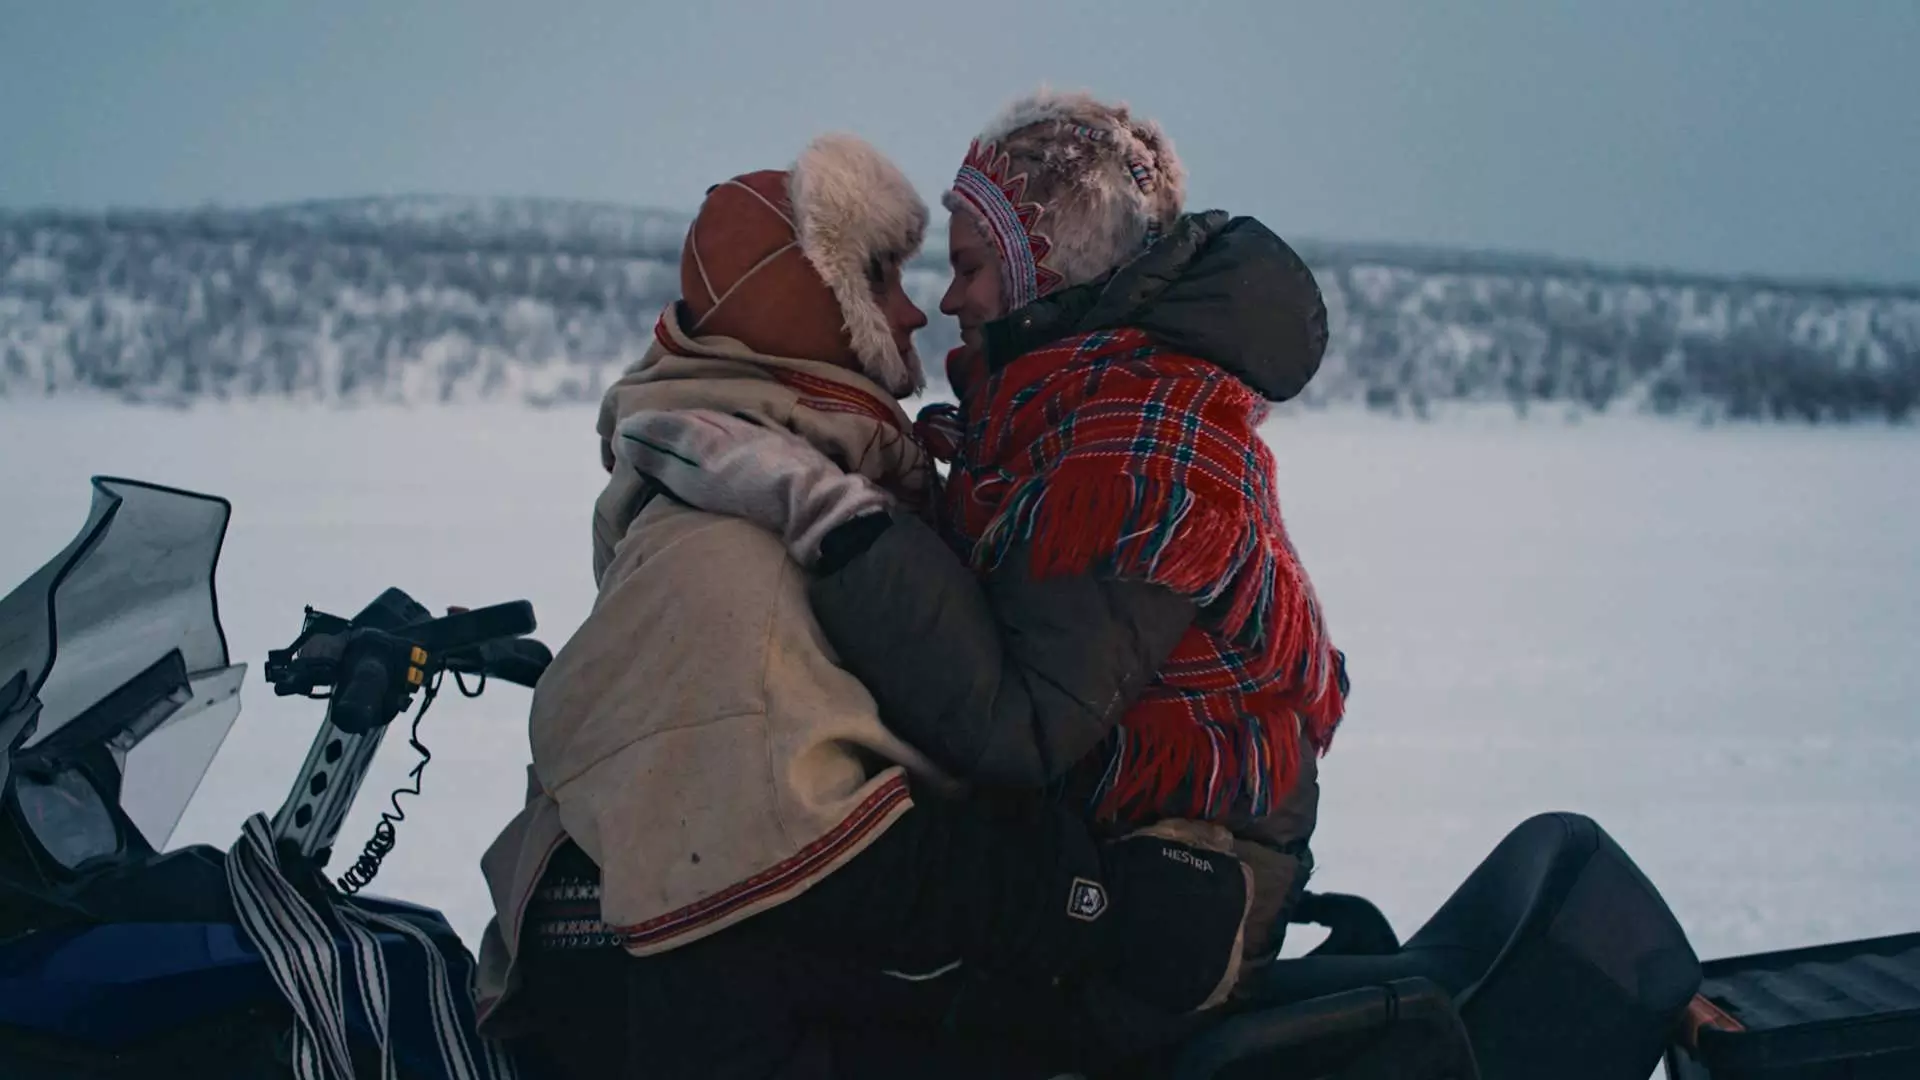 Halvtotal. En samisk mann og samisk kvinne sitter ansikt til ansikt på en snøscooter. De holder rundt hverandre og ser forelsket ut. I bakgrunnen ser vi snø og fjell. De har på seg tradisjonelle samiske plagg. Foto.